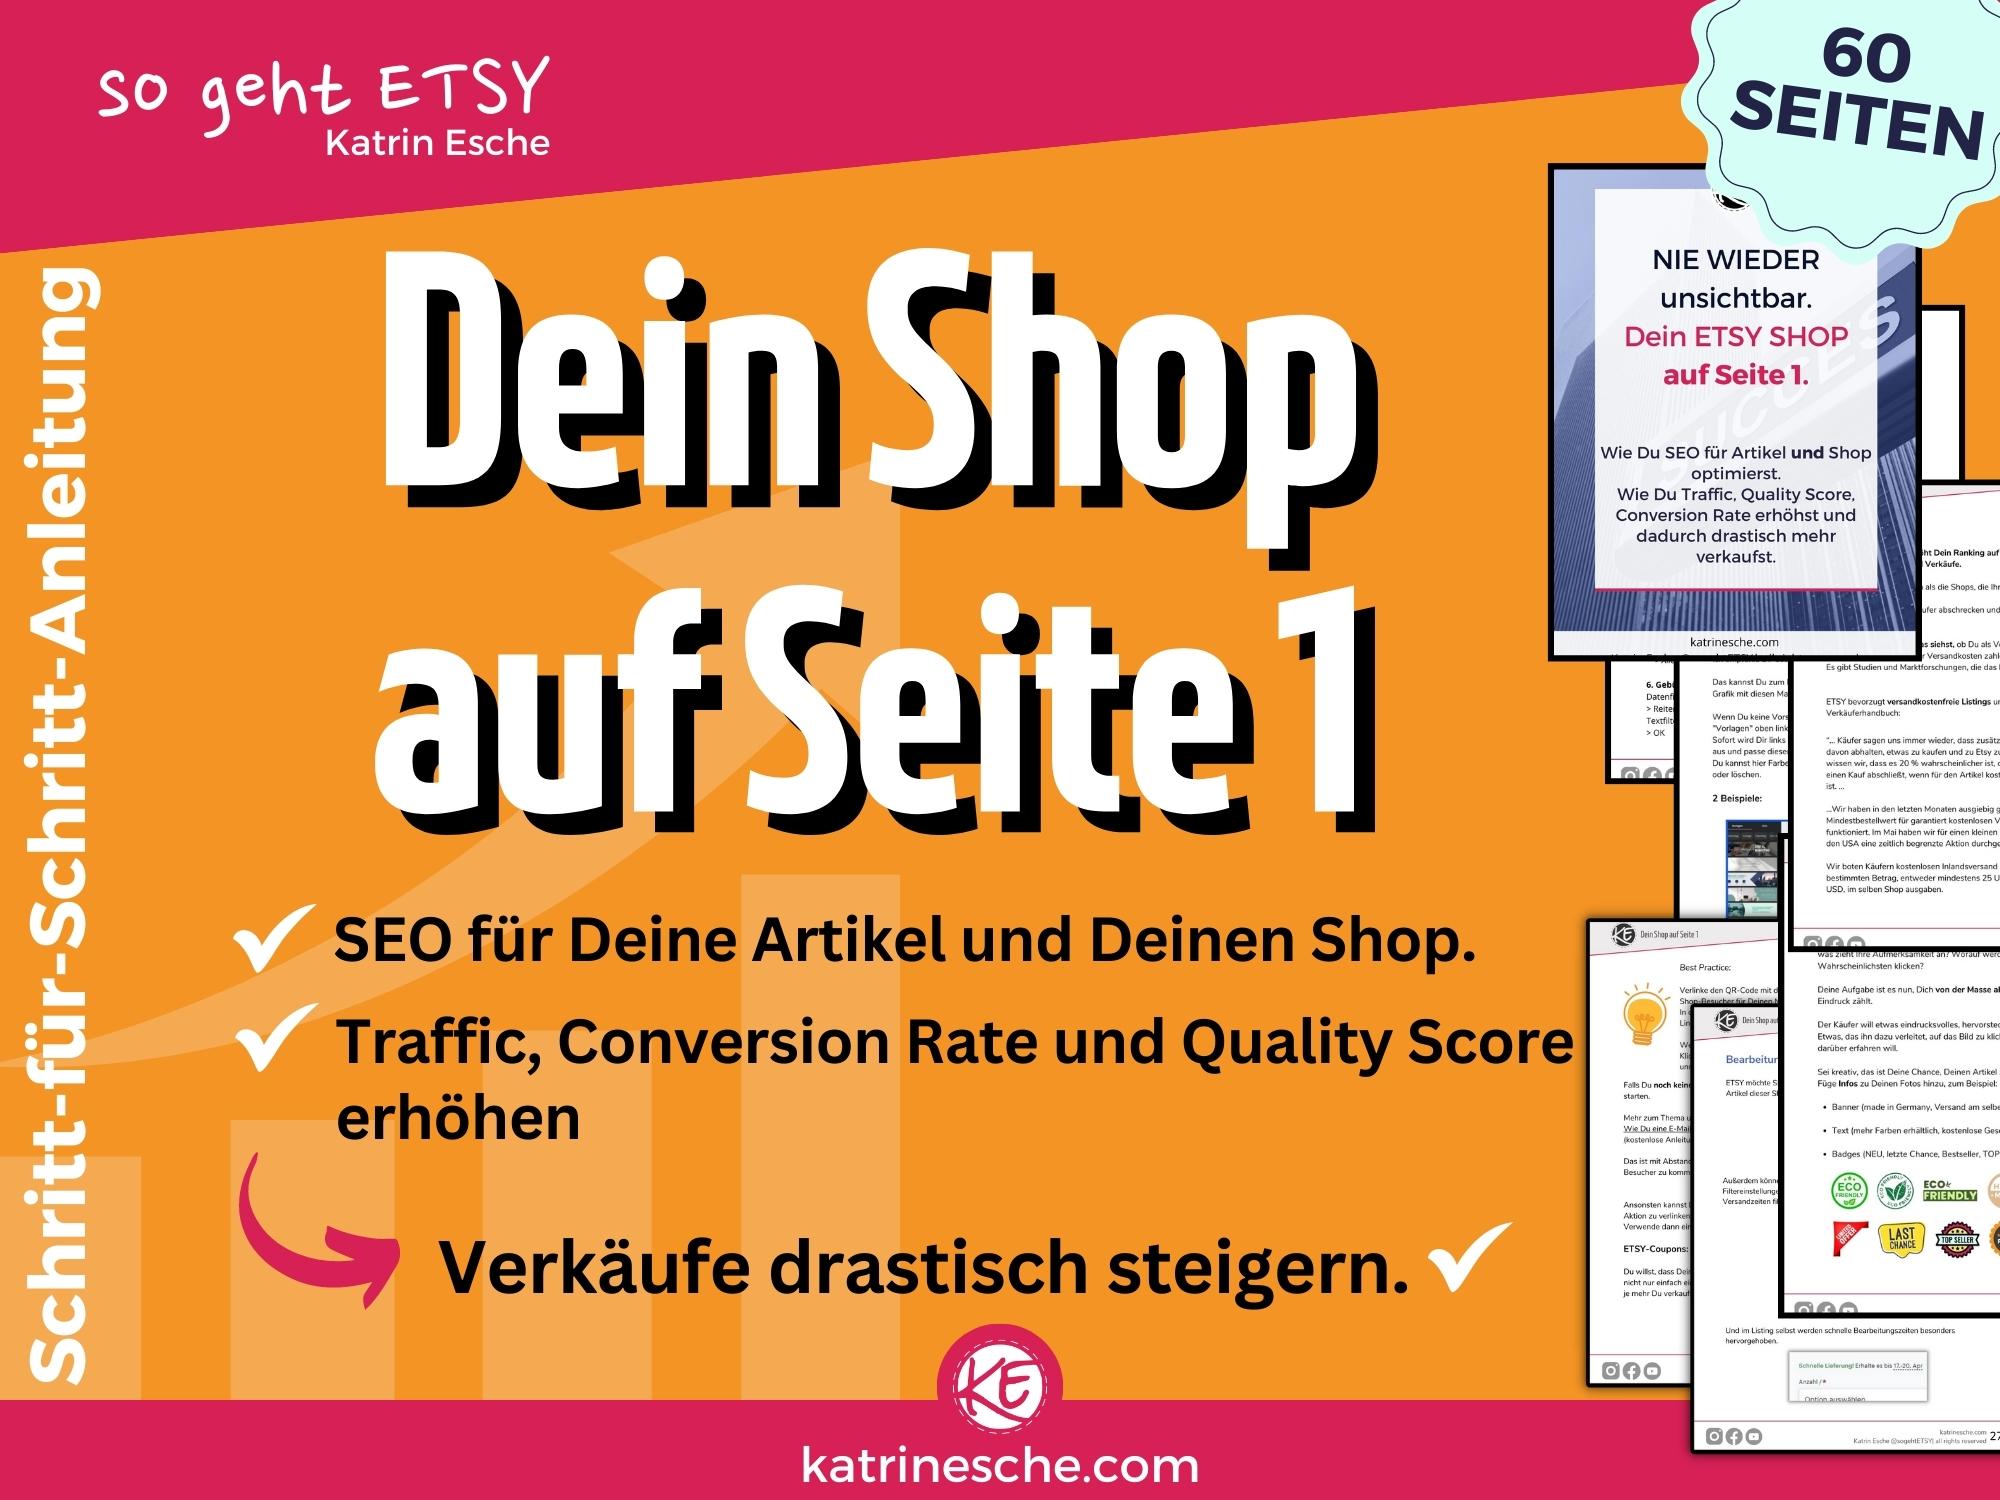 ETSY shop SEO Anleitung